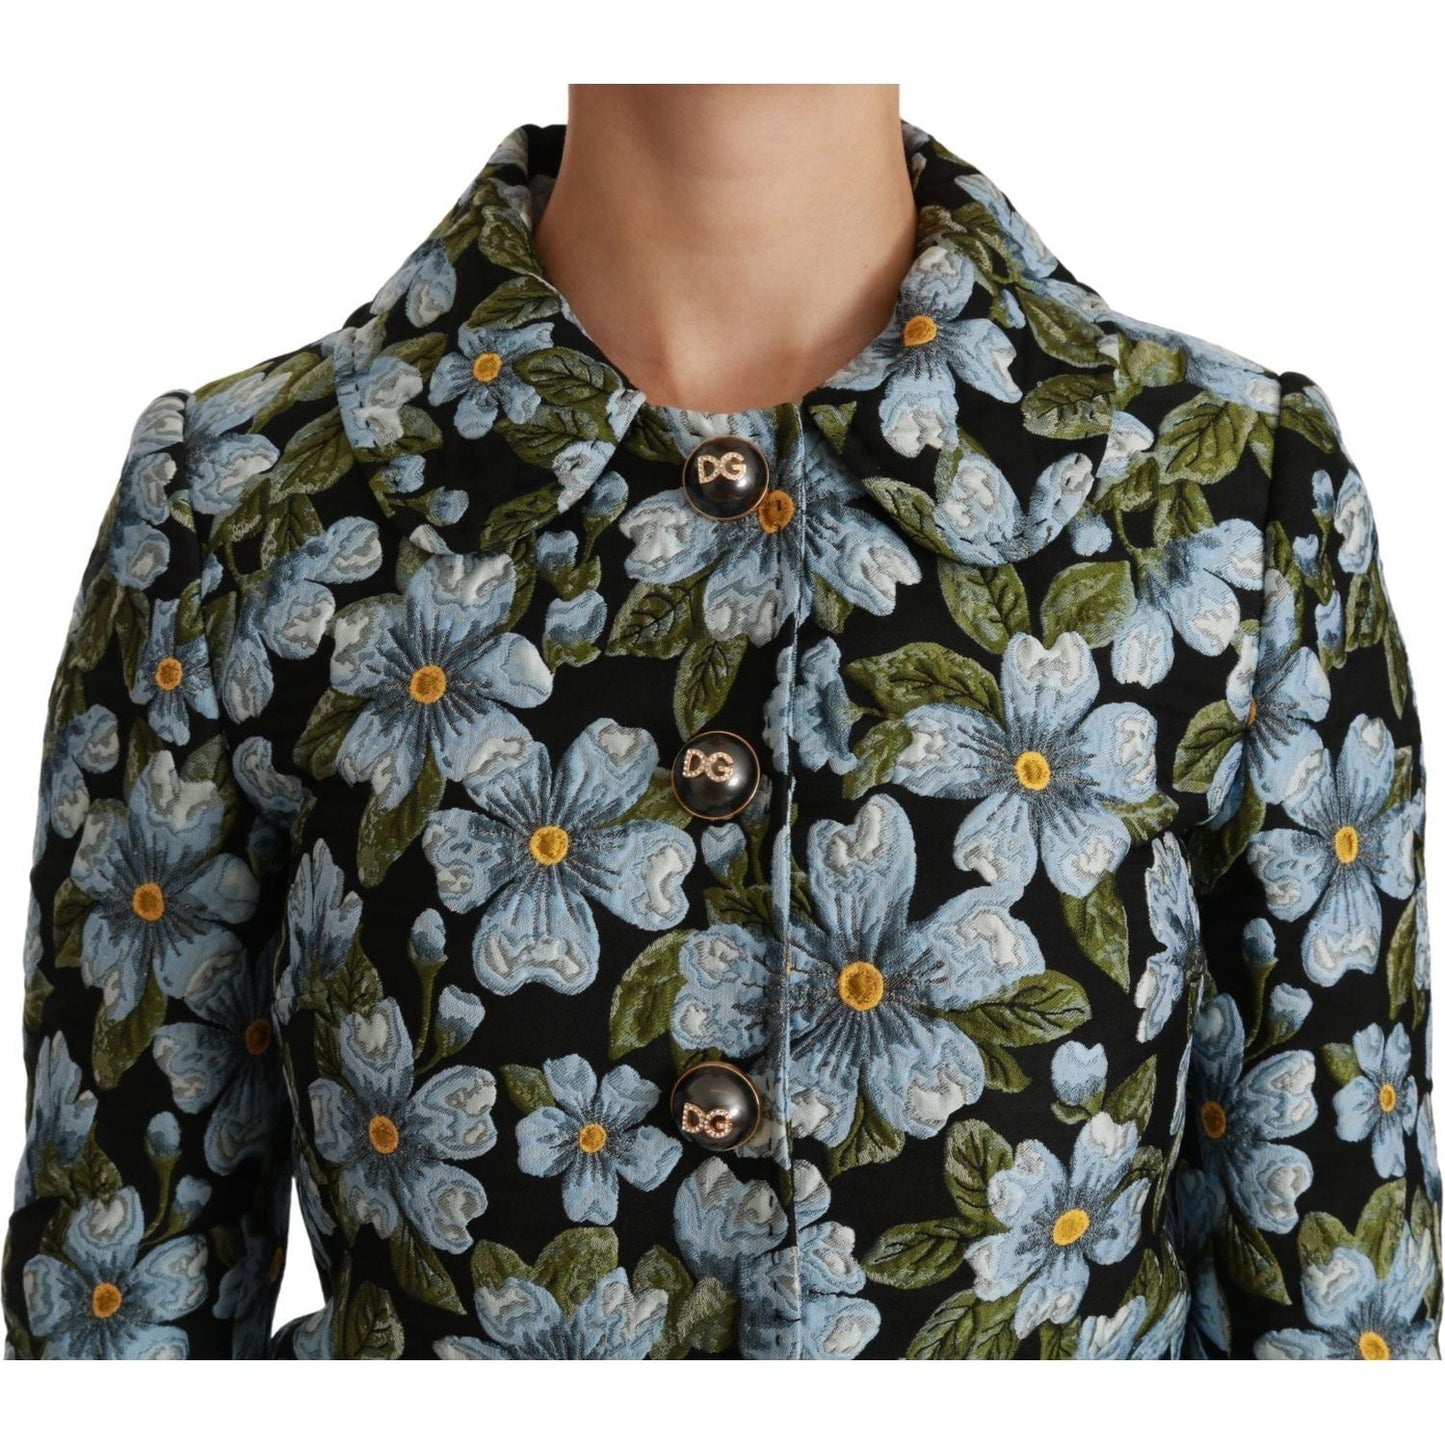 Dolce & Gabbana Elegant Floral Brocade Blazer Coat Jacket Coats & Jackets multicolor-floral-blazer-coat-polyester-jacket